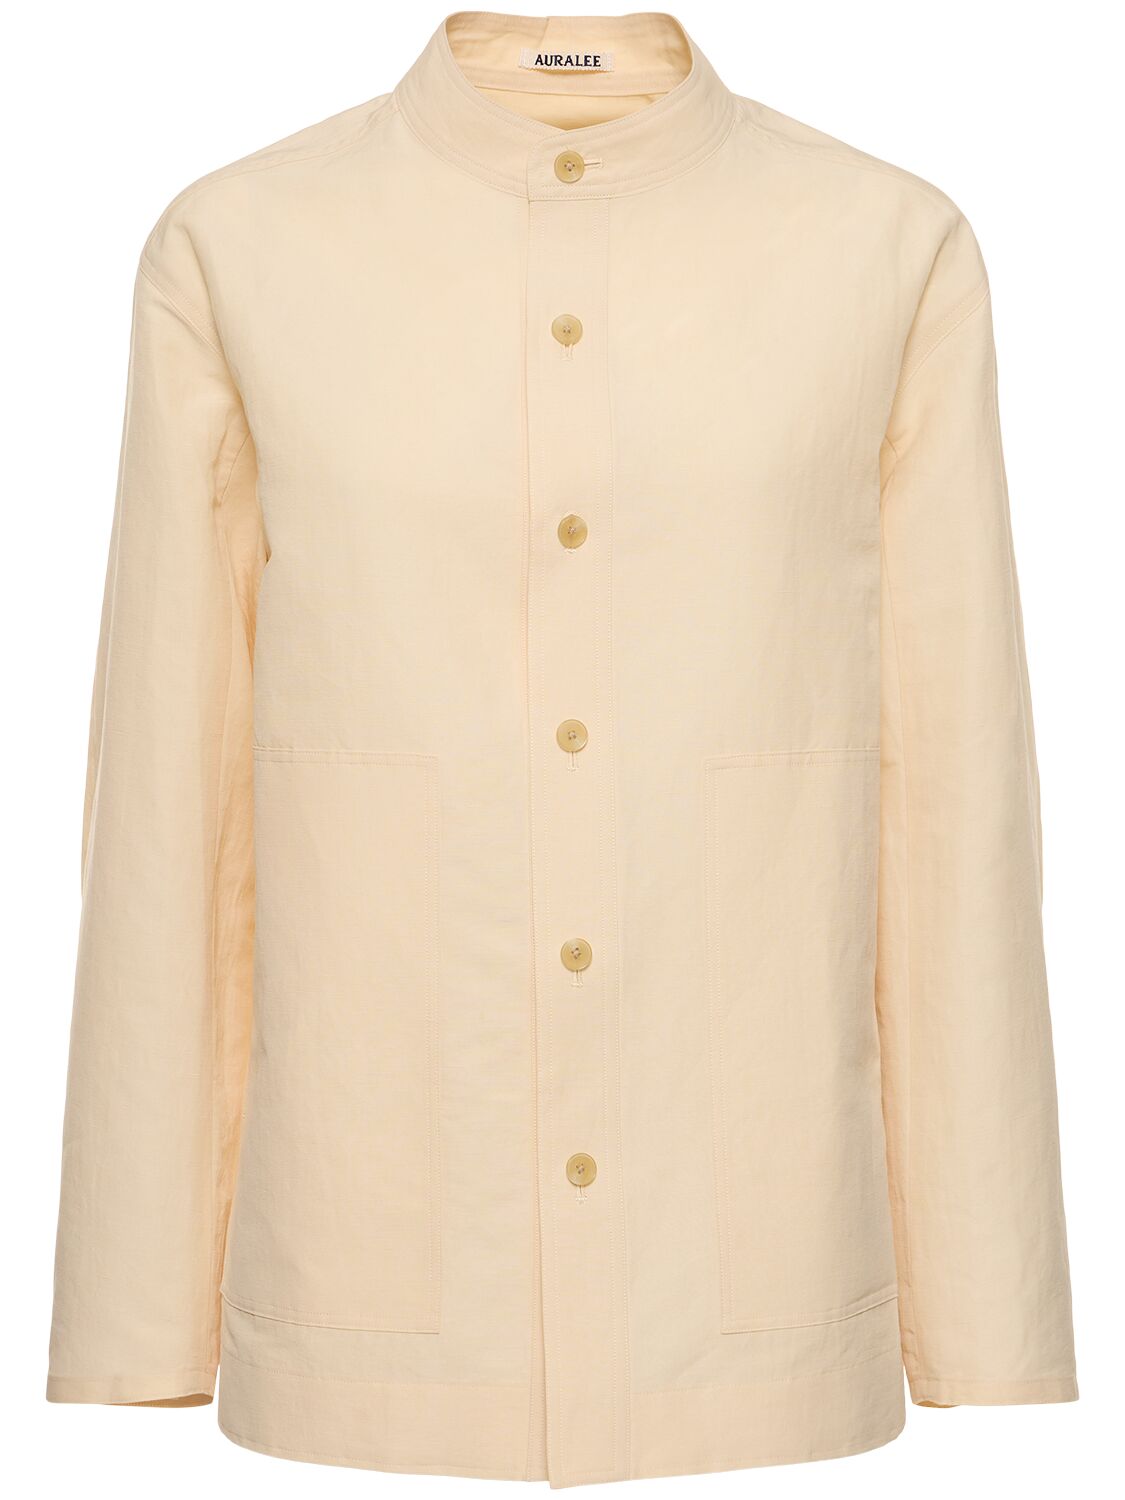 Auralee Linen & Cotton Long Sleeve Shirt In Ecru